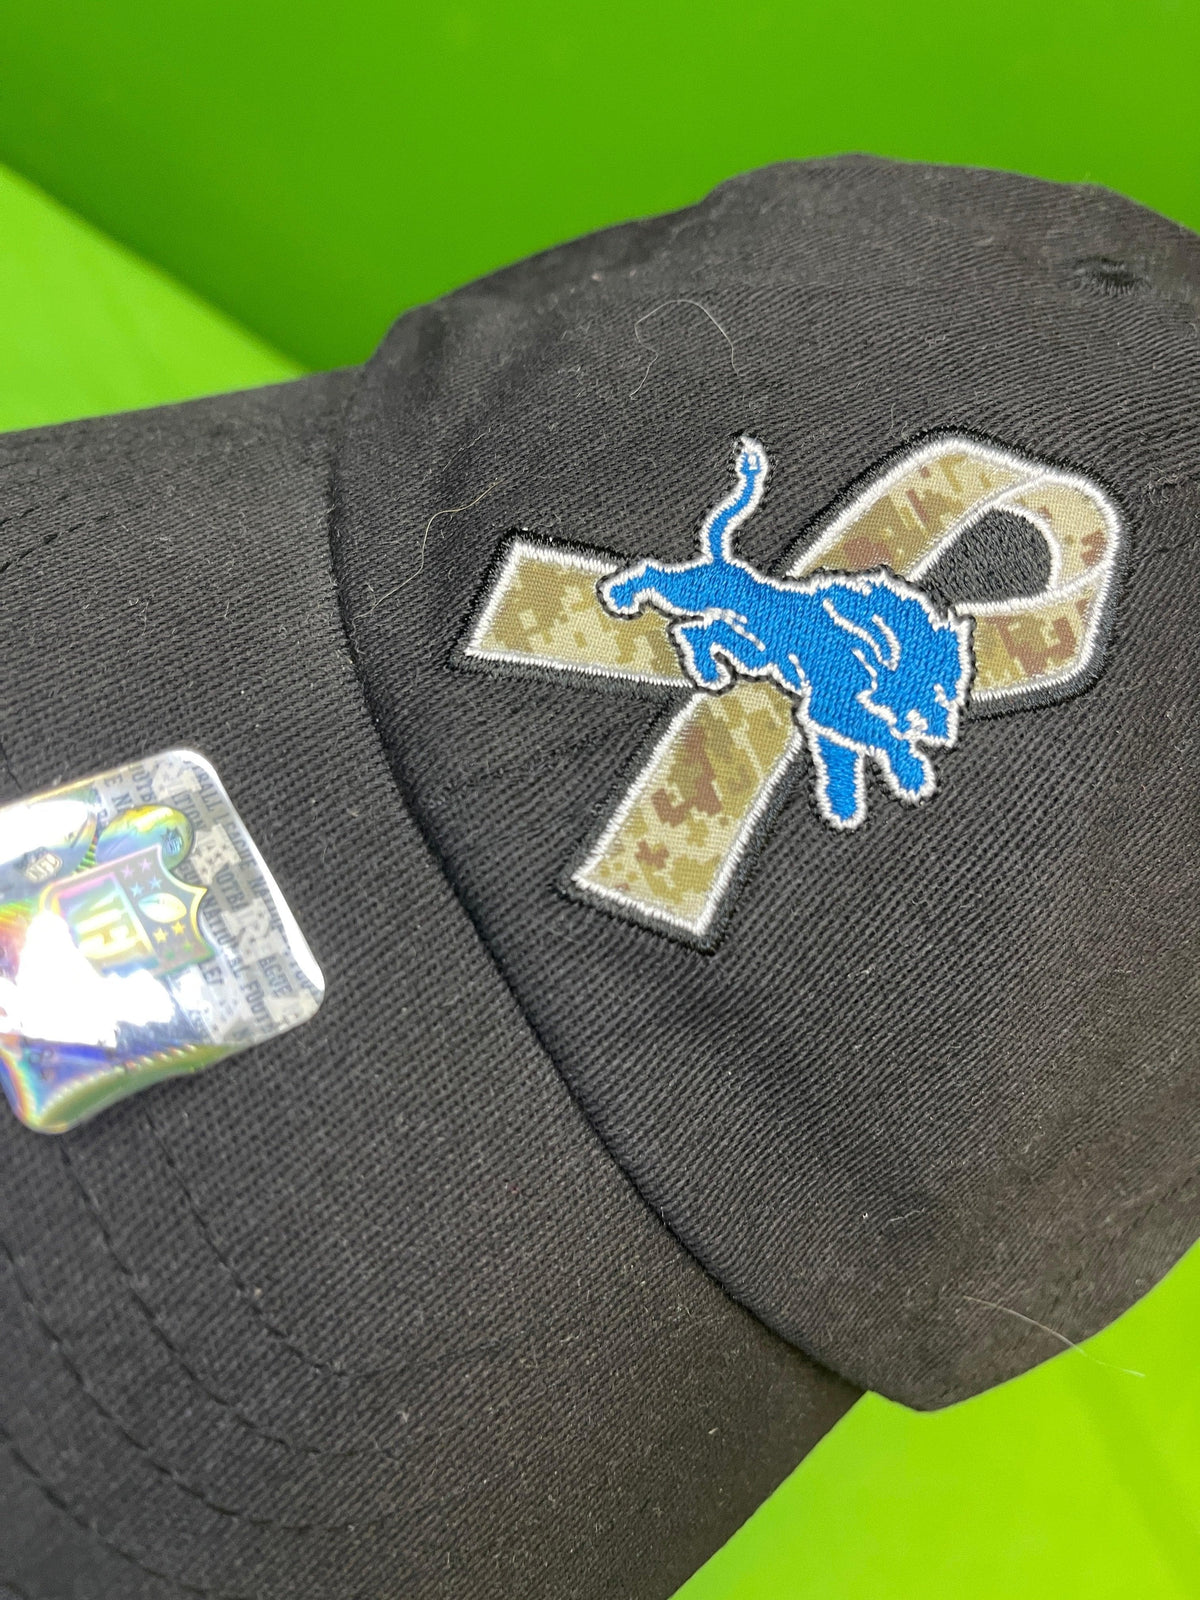 NFL Detroit Lions Black Salute to Service Hat/Cap Snapback OSFM